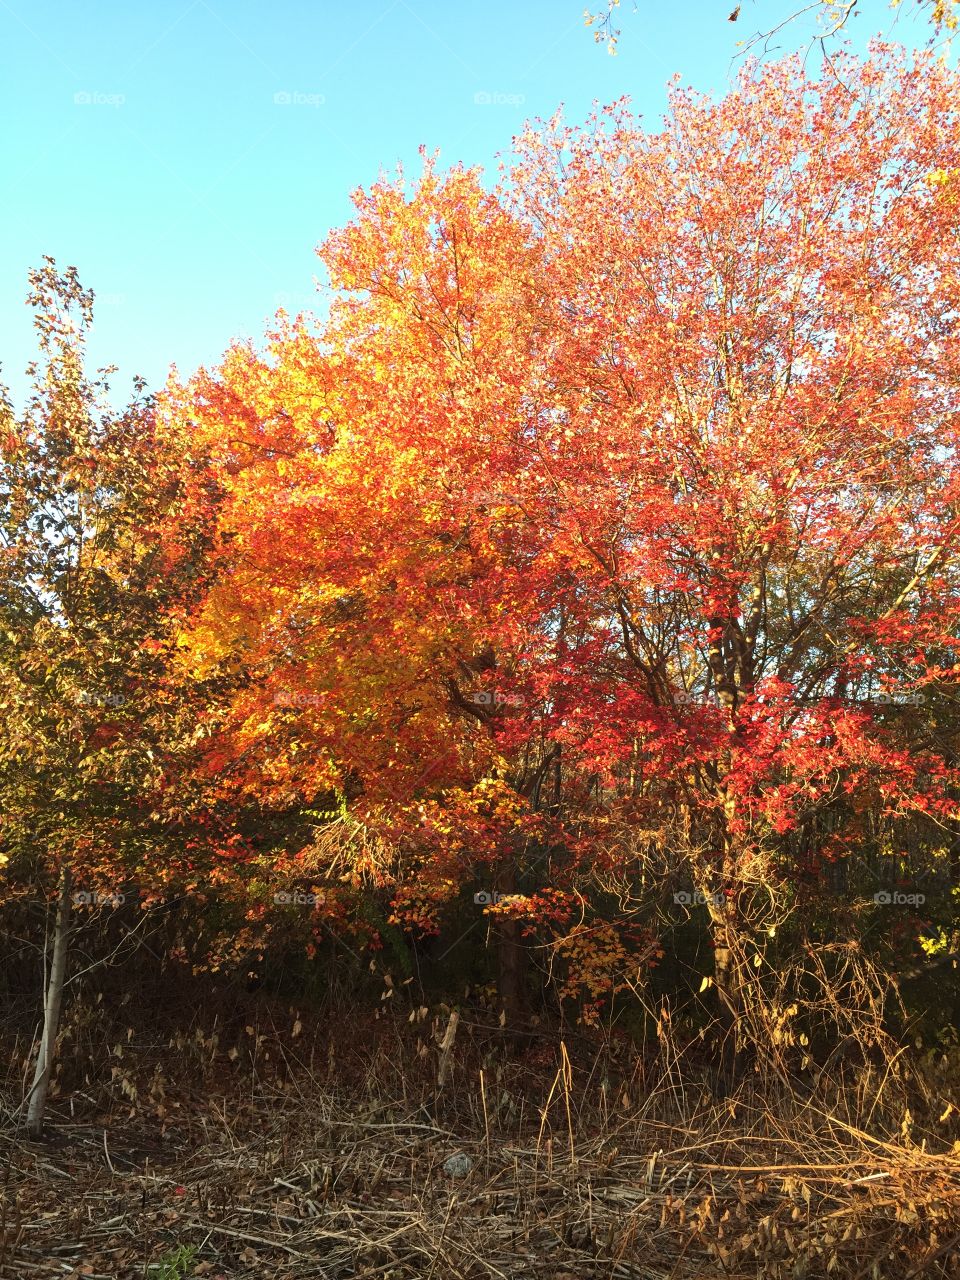 Fall Leaves. Taken in Waltham, MA